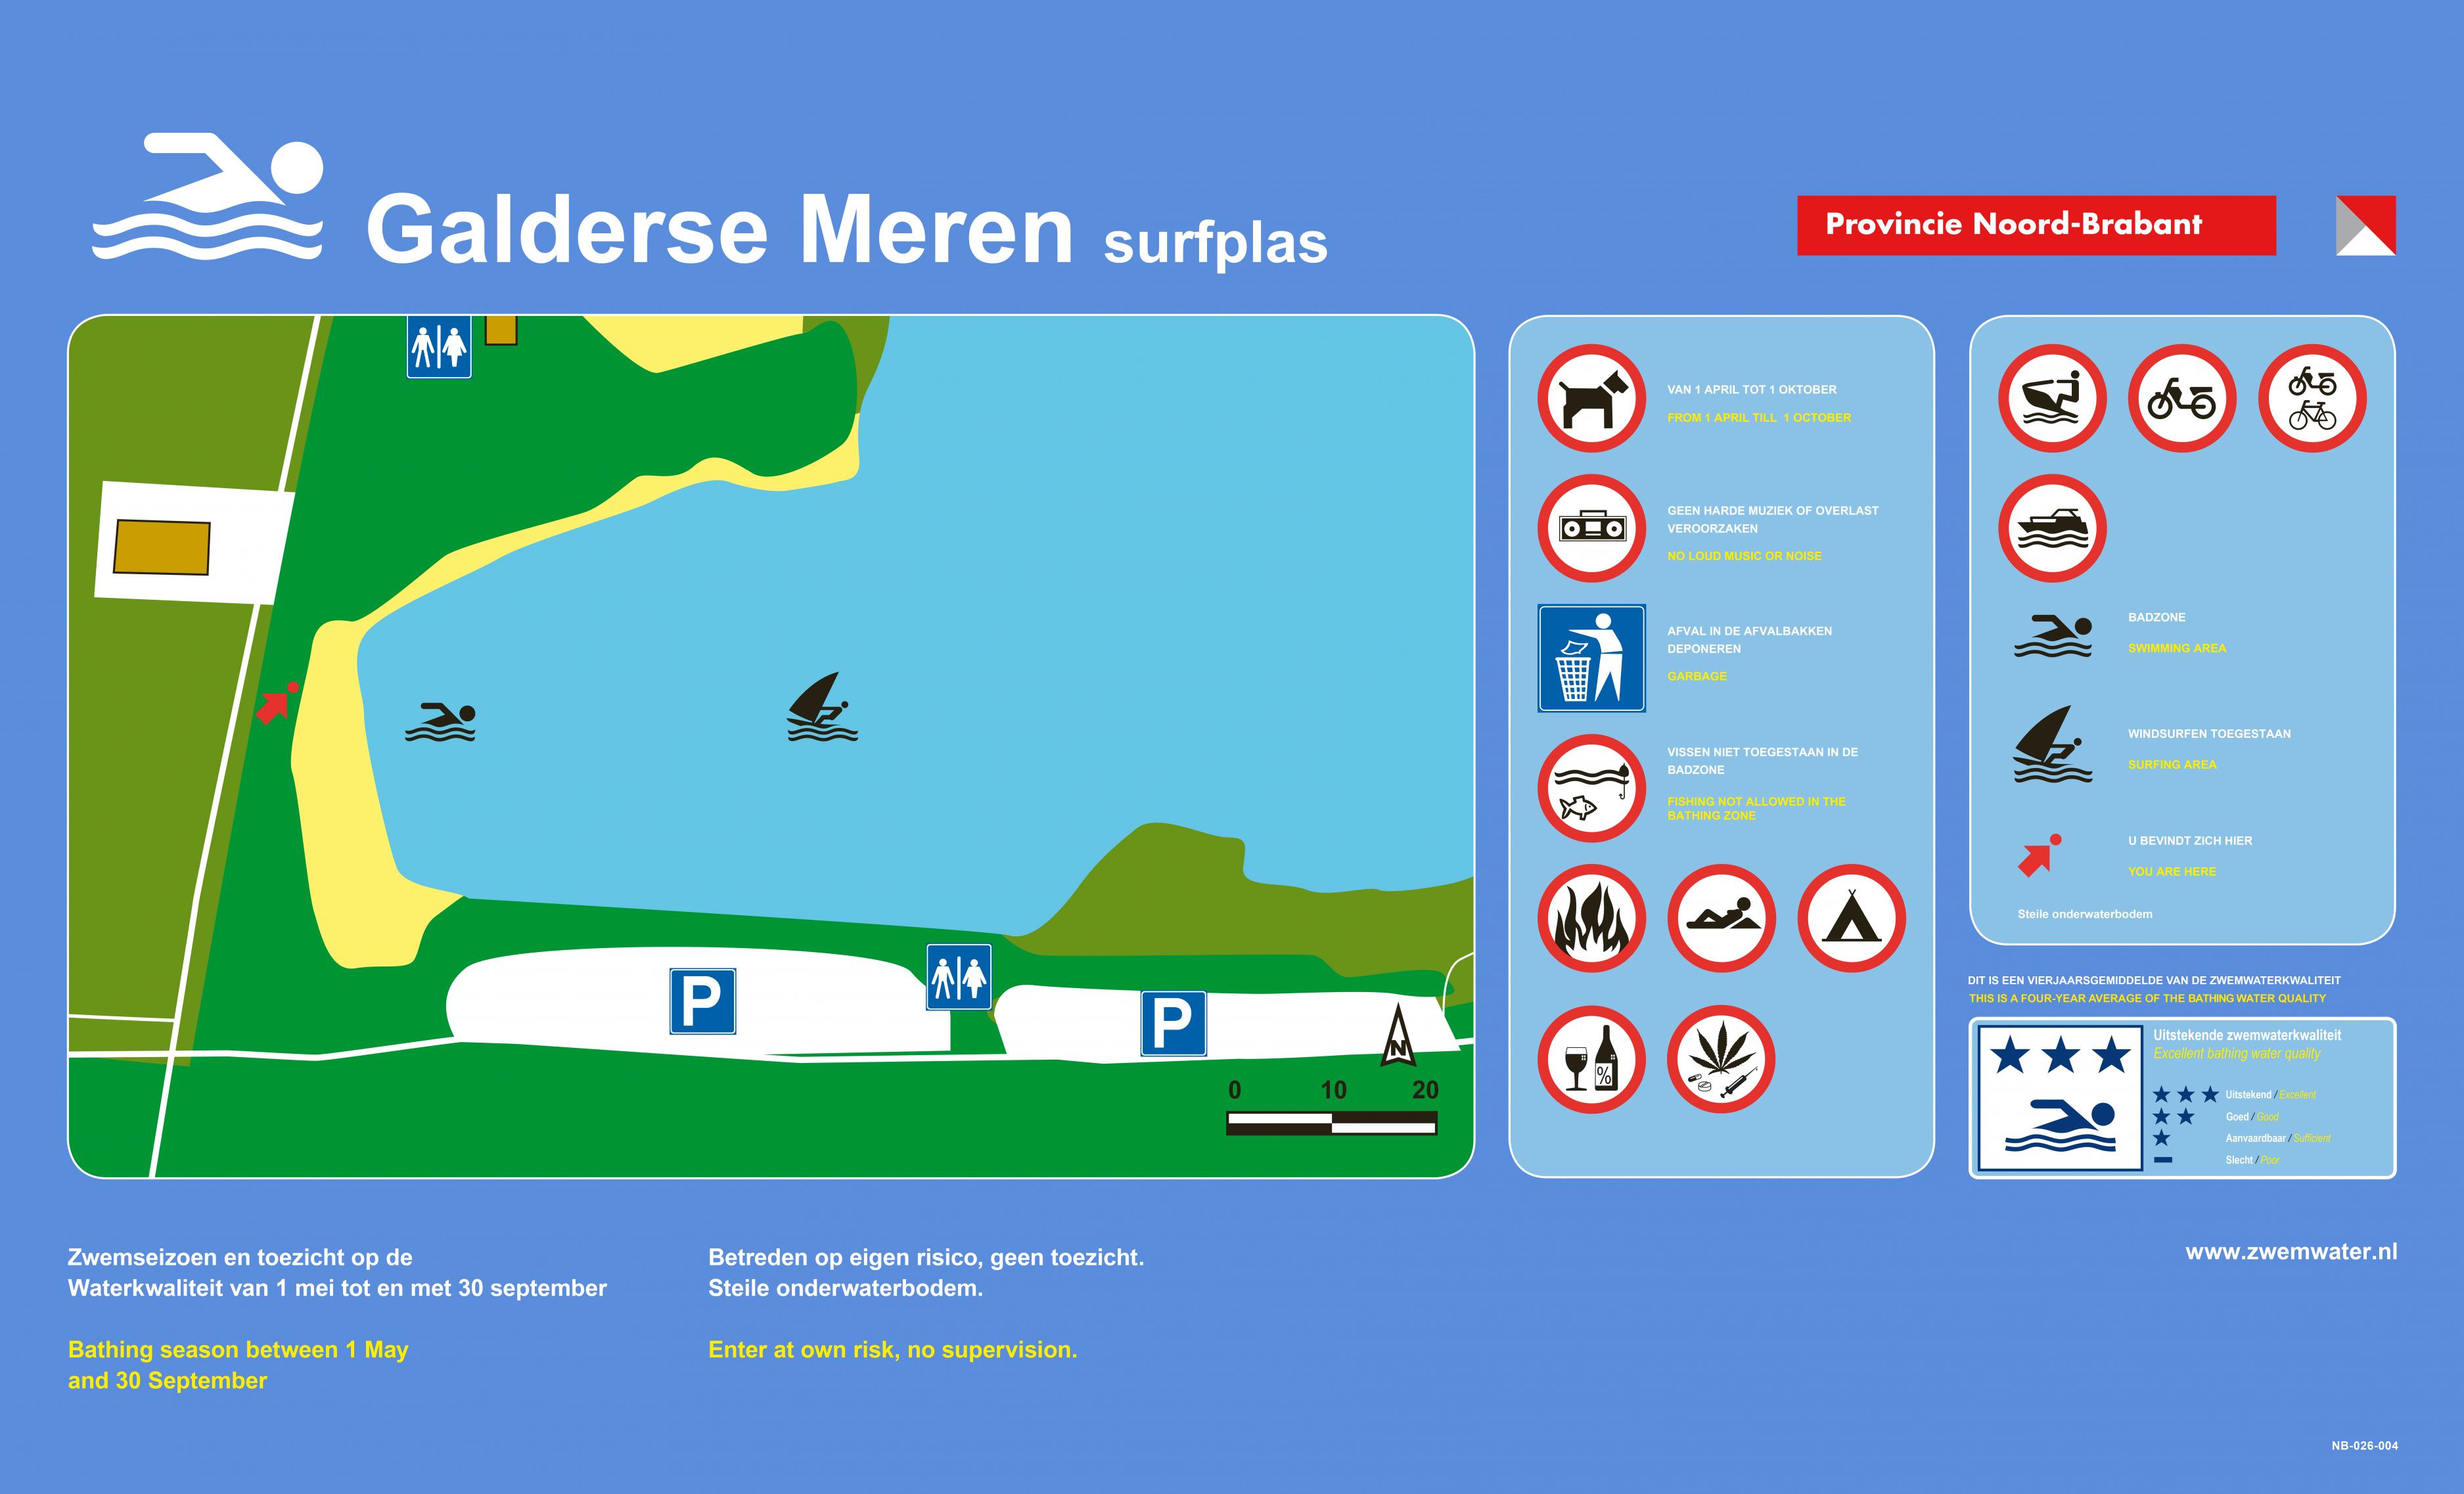 Het informatiebord bij zwemlocatie Galderse Meren Surfplas in Z.W. hoek